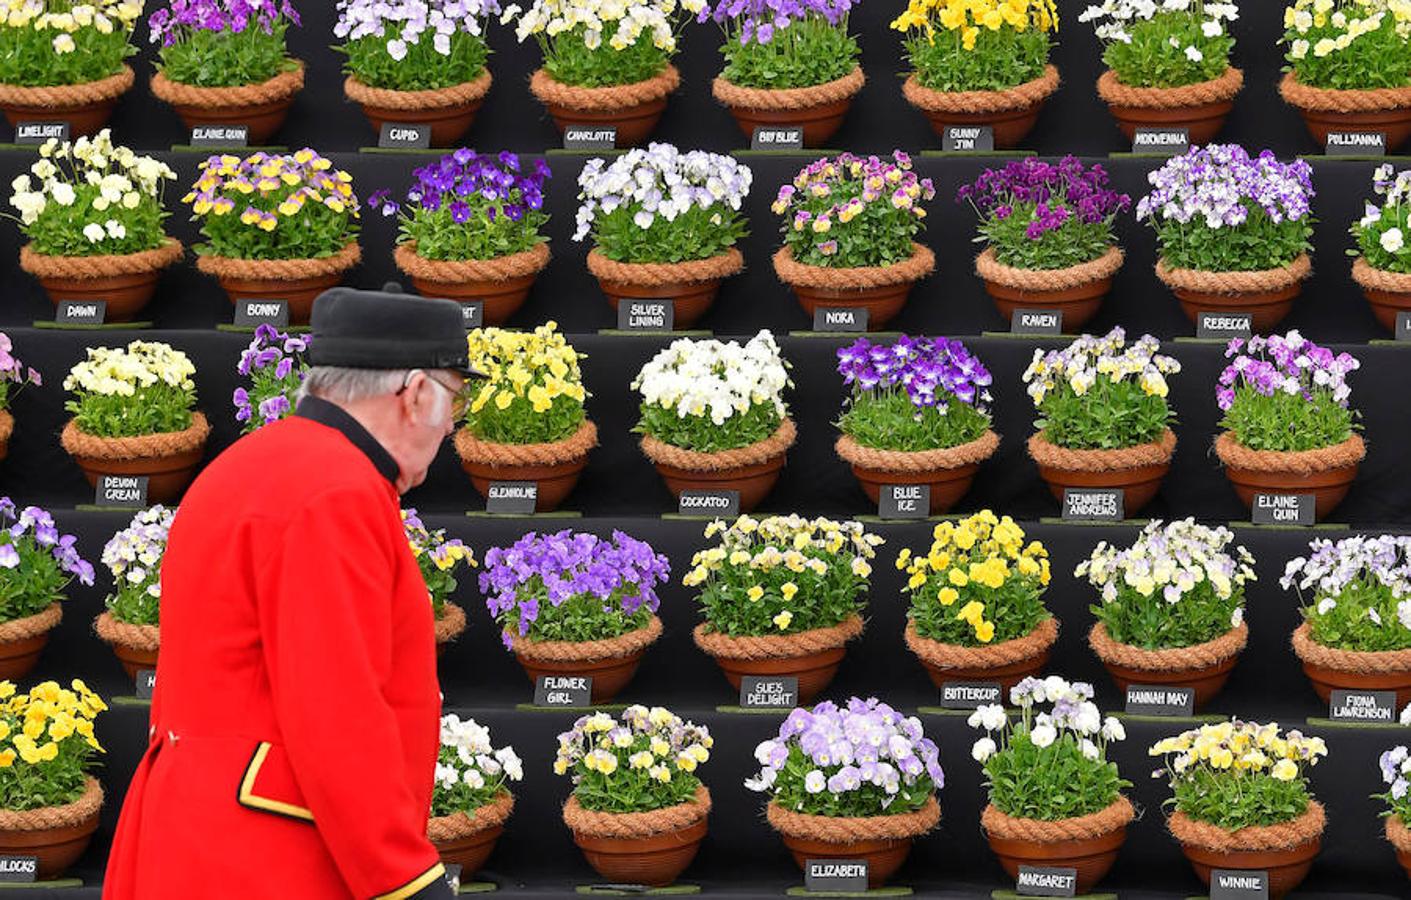 El Chelsea Flowers Show, que se celebra estos días en Londres, es mucho más que una exposición de jardinería. Organizado cada año por la Royal Horticultural Society's, es el espectáculo de flores y jardinería más famoso de Reino Unido y probablemente del mundo: flores, moda, complementos, danza... Y apadrinado por el Gobierno británico y la propia Casa Real. 